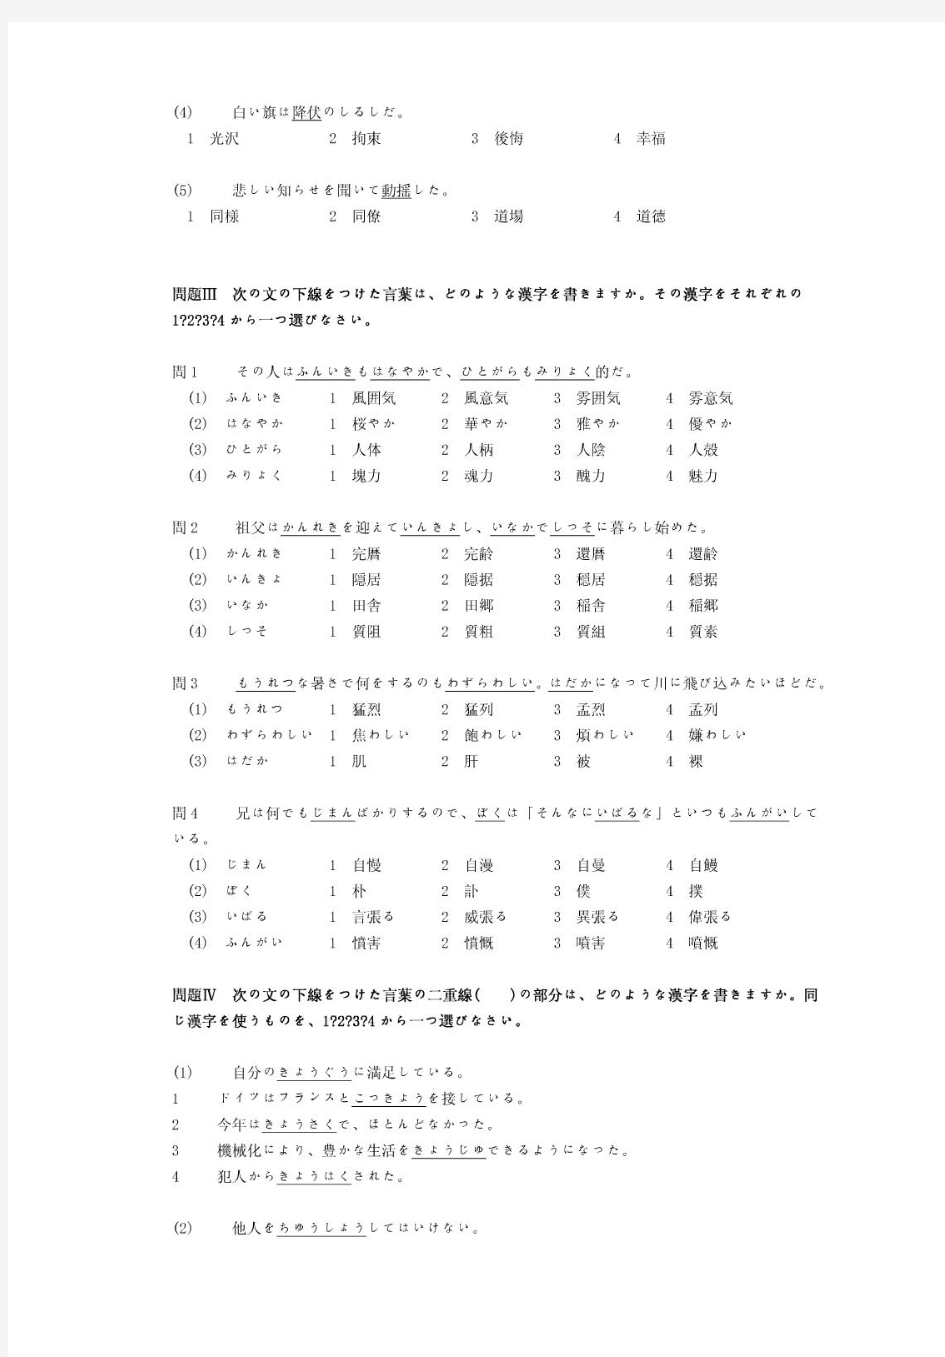 日语能力考试1级真题及备考资料-2001年日语能力考试一级真题